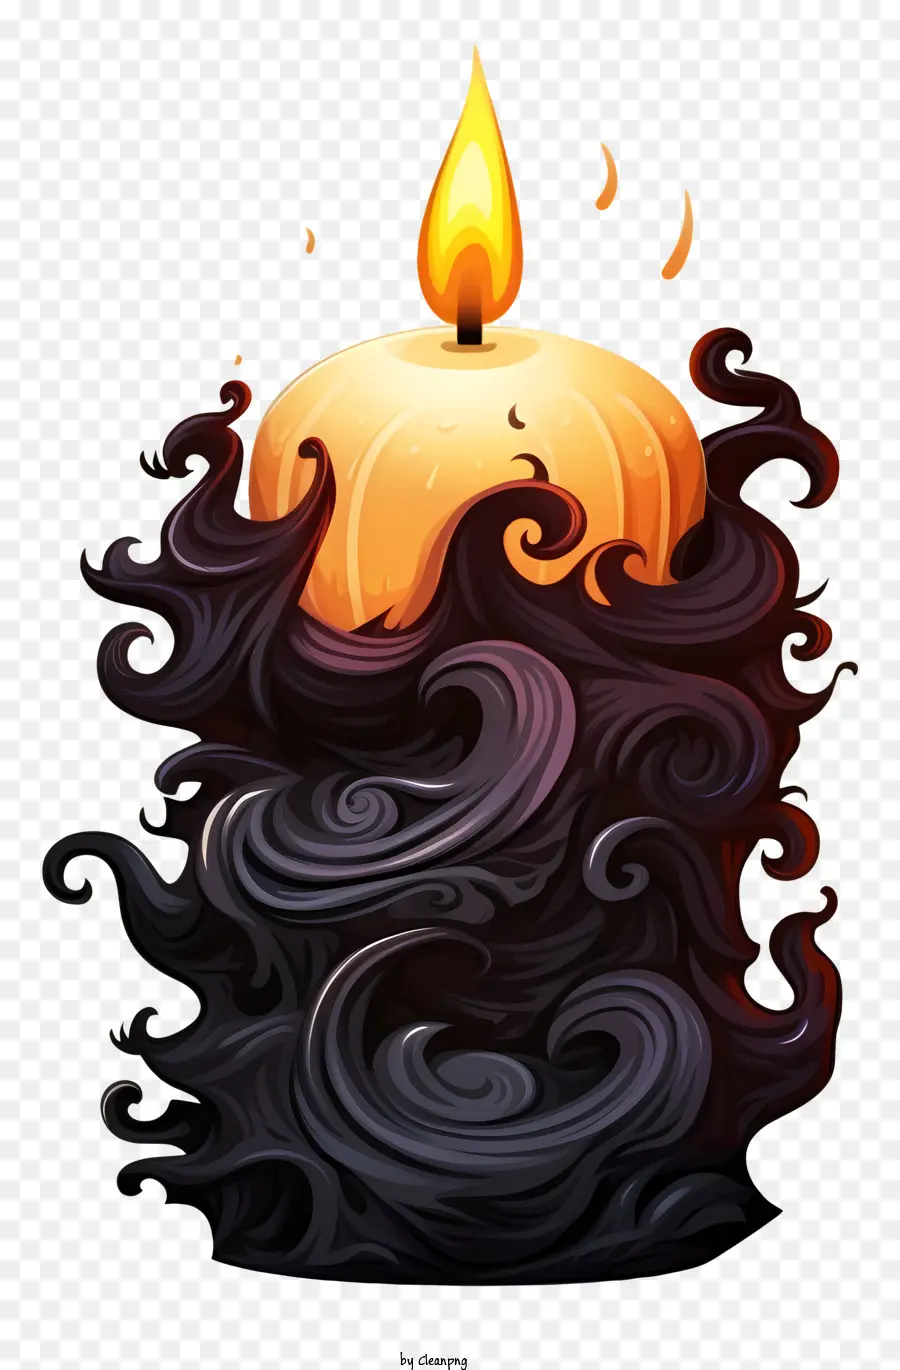 Kerzenschwarz -Weiß -Wellenlinien läuten Flamme - Schwarz -weiße wellige Kerze mit Flamme